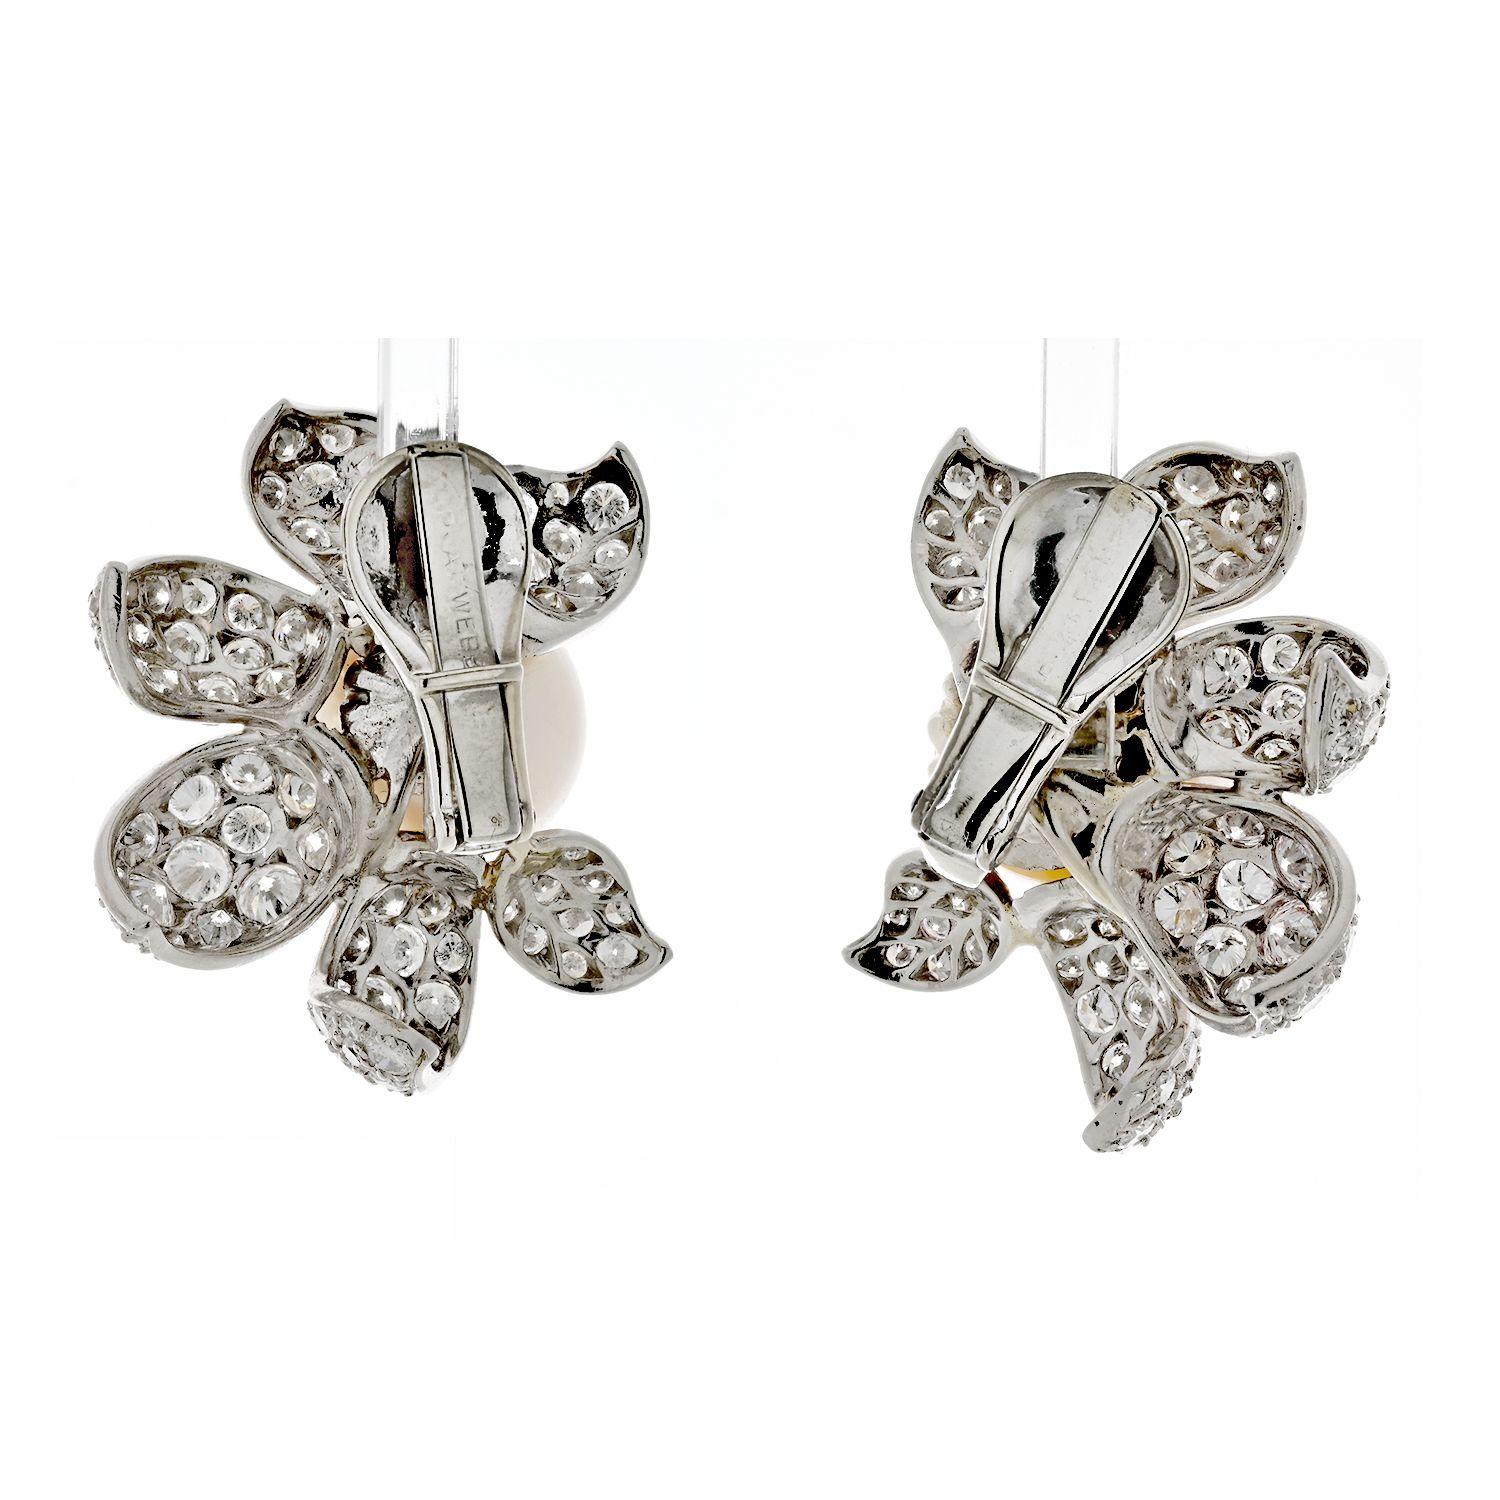 Très belle paire de boucles d'oreilles en platine, diamants et perles de culture de David Webb. Elles sont ornées de diamants ronds de très haute qualité, de taille brillante, totalisant environ 9cts. Les perles sont également de grande qualité,